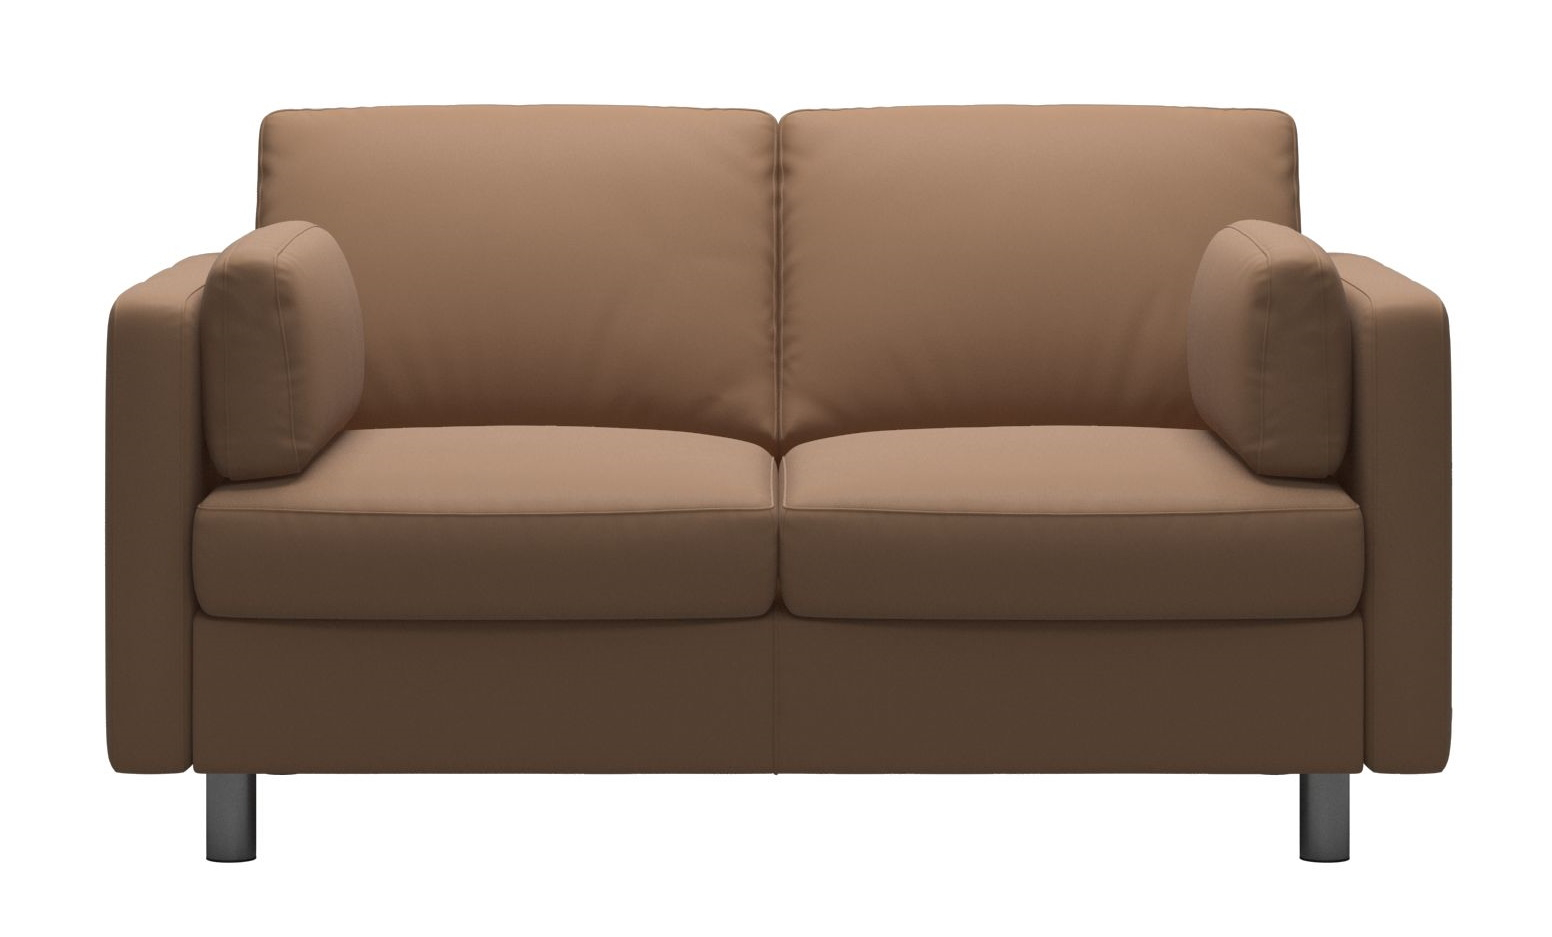 Canapea cu 2 locuri Stressless Emma E600 Classic picioare metalice 11cm piele Batik Latte 11cm imagine model 2022